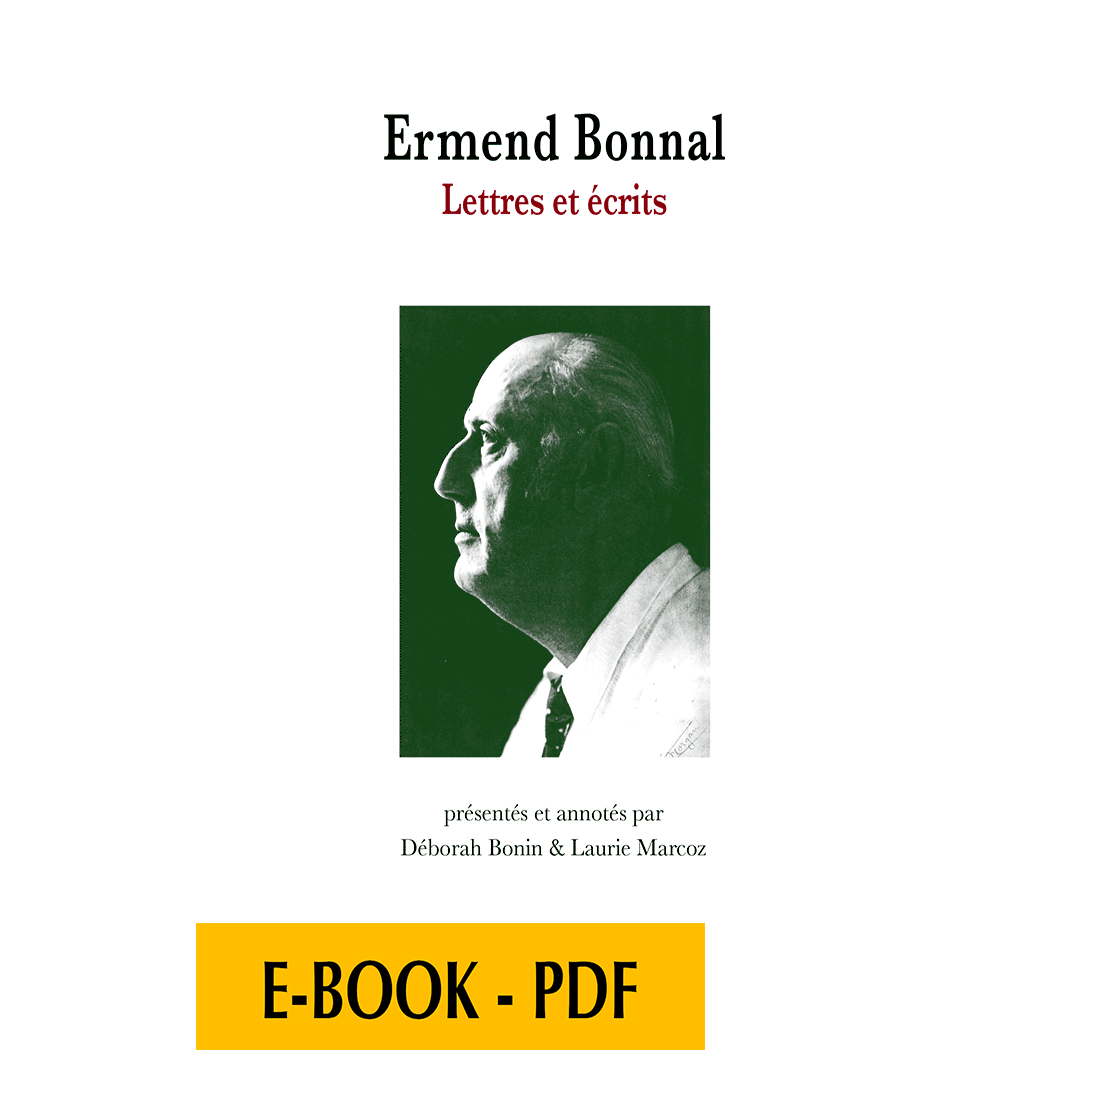 Ermend Bonnal, Lettres et écrits - E-book PDF